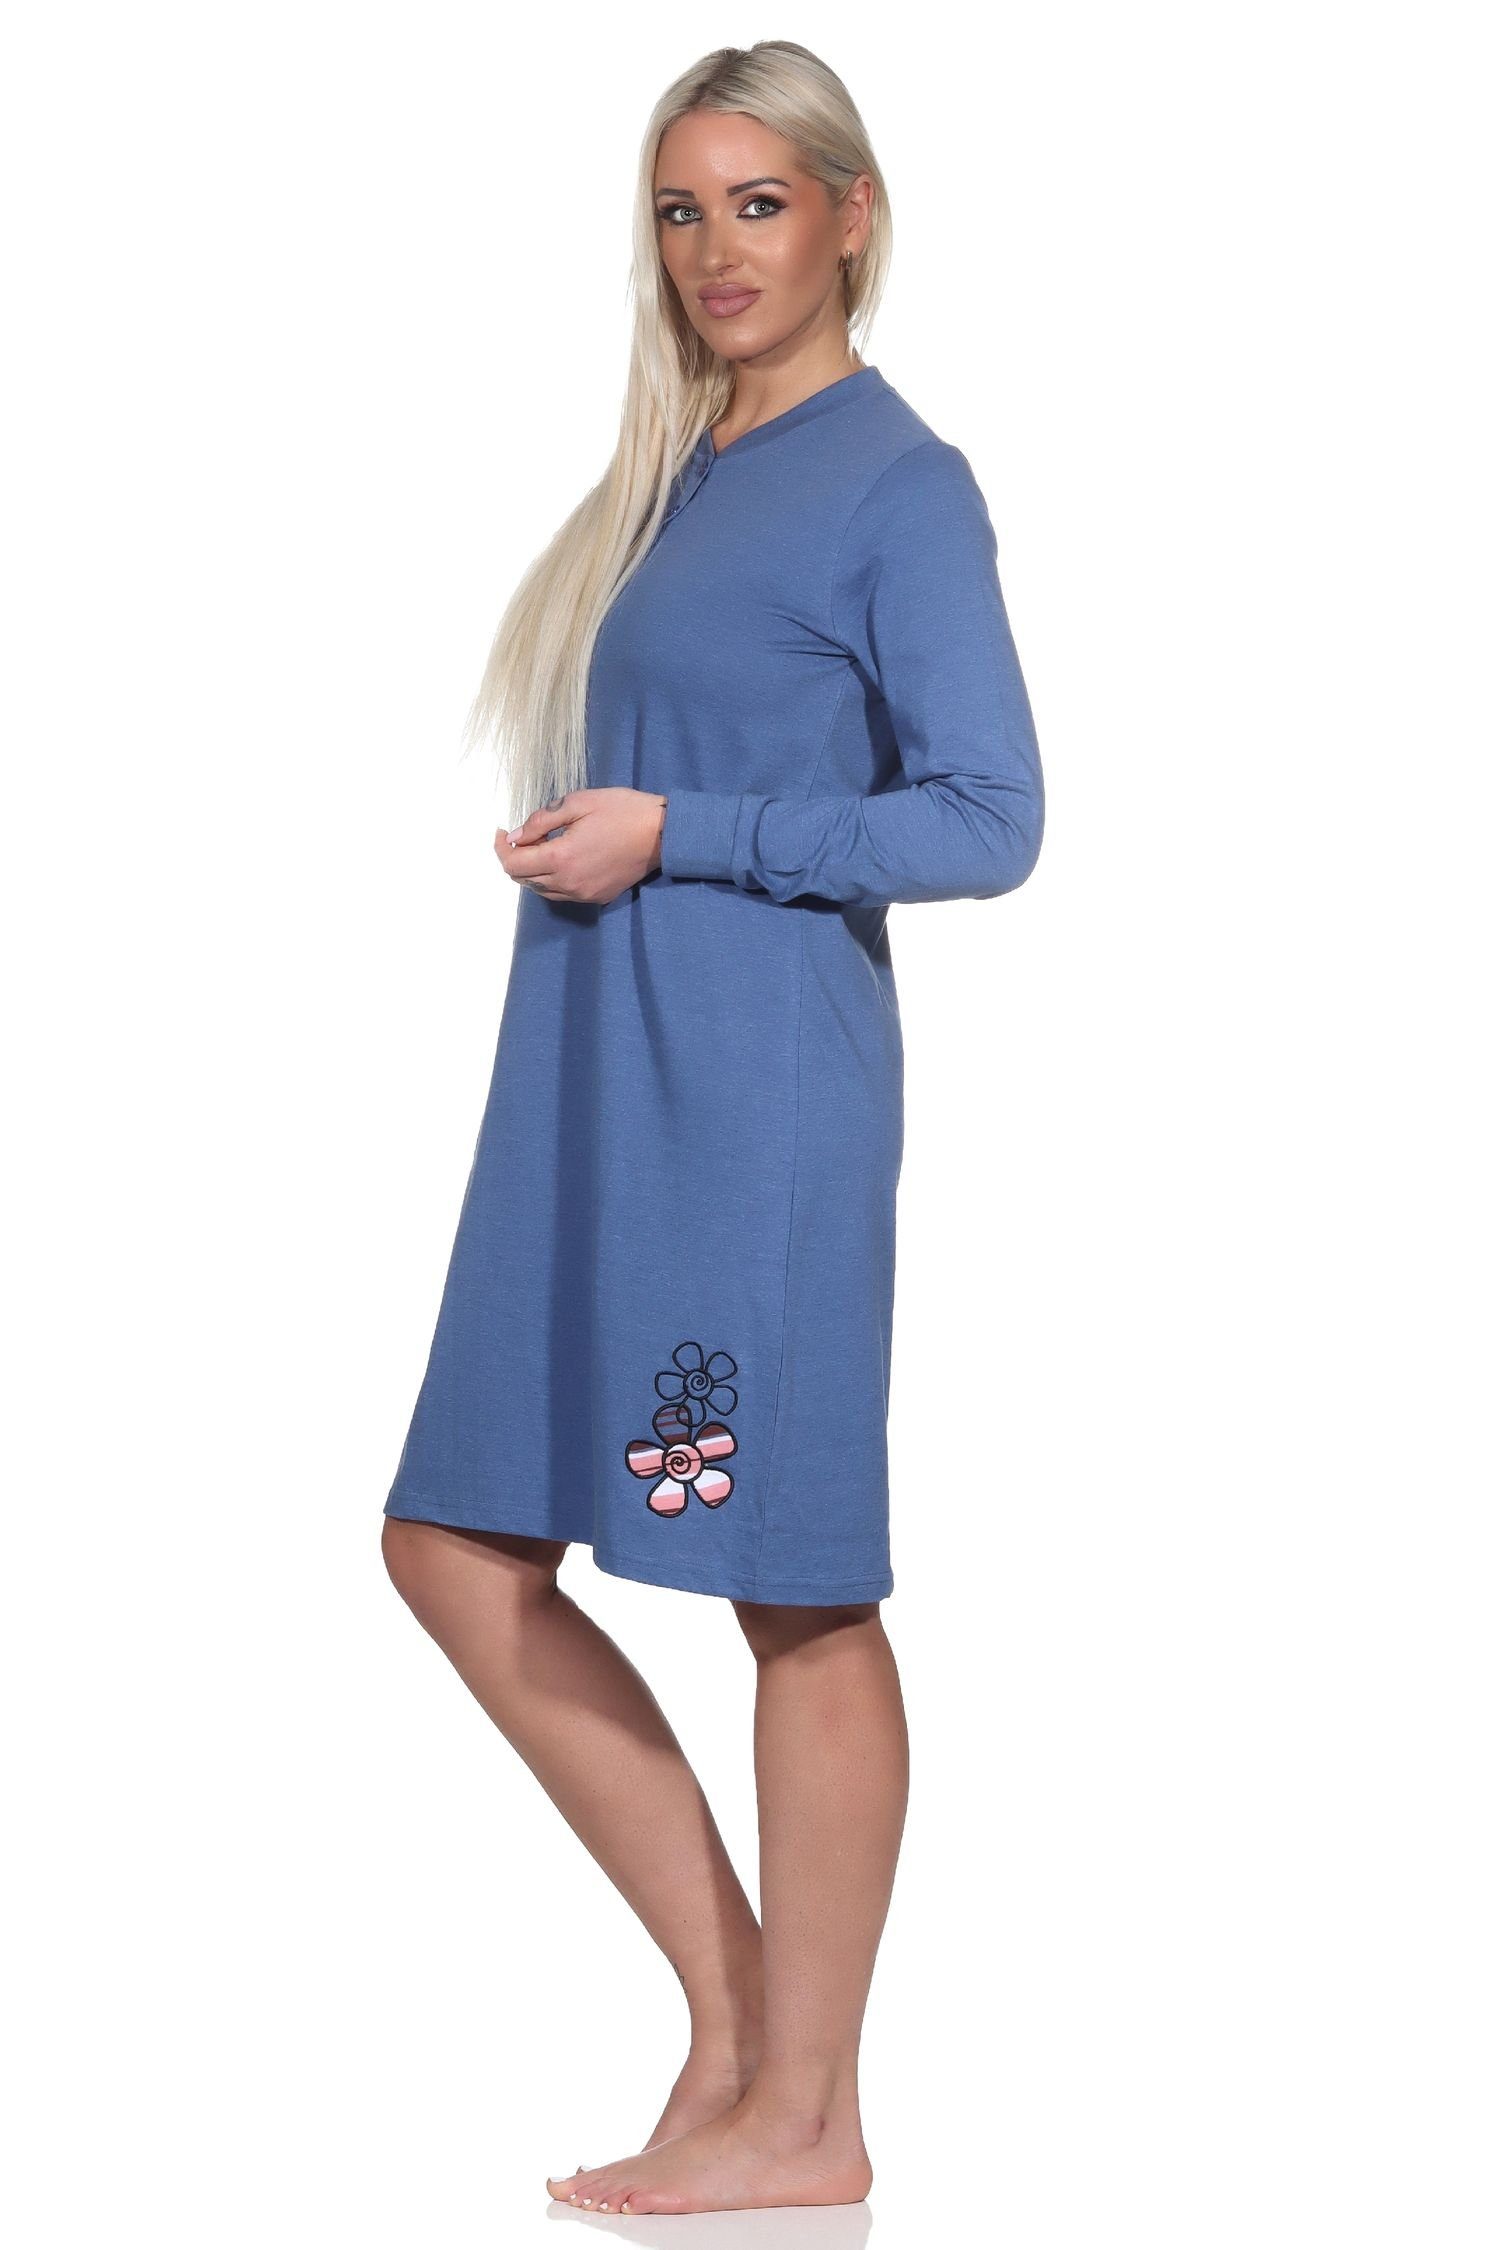 Normann Nachthemd Normann Damen Nachthemd Bündchen in - mit Übergrössen langarm blau-mel. auch